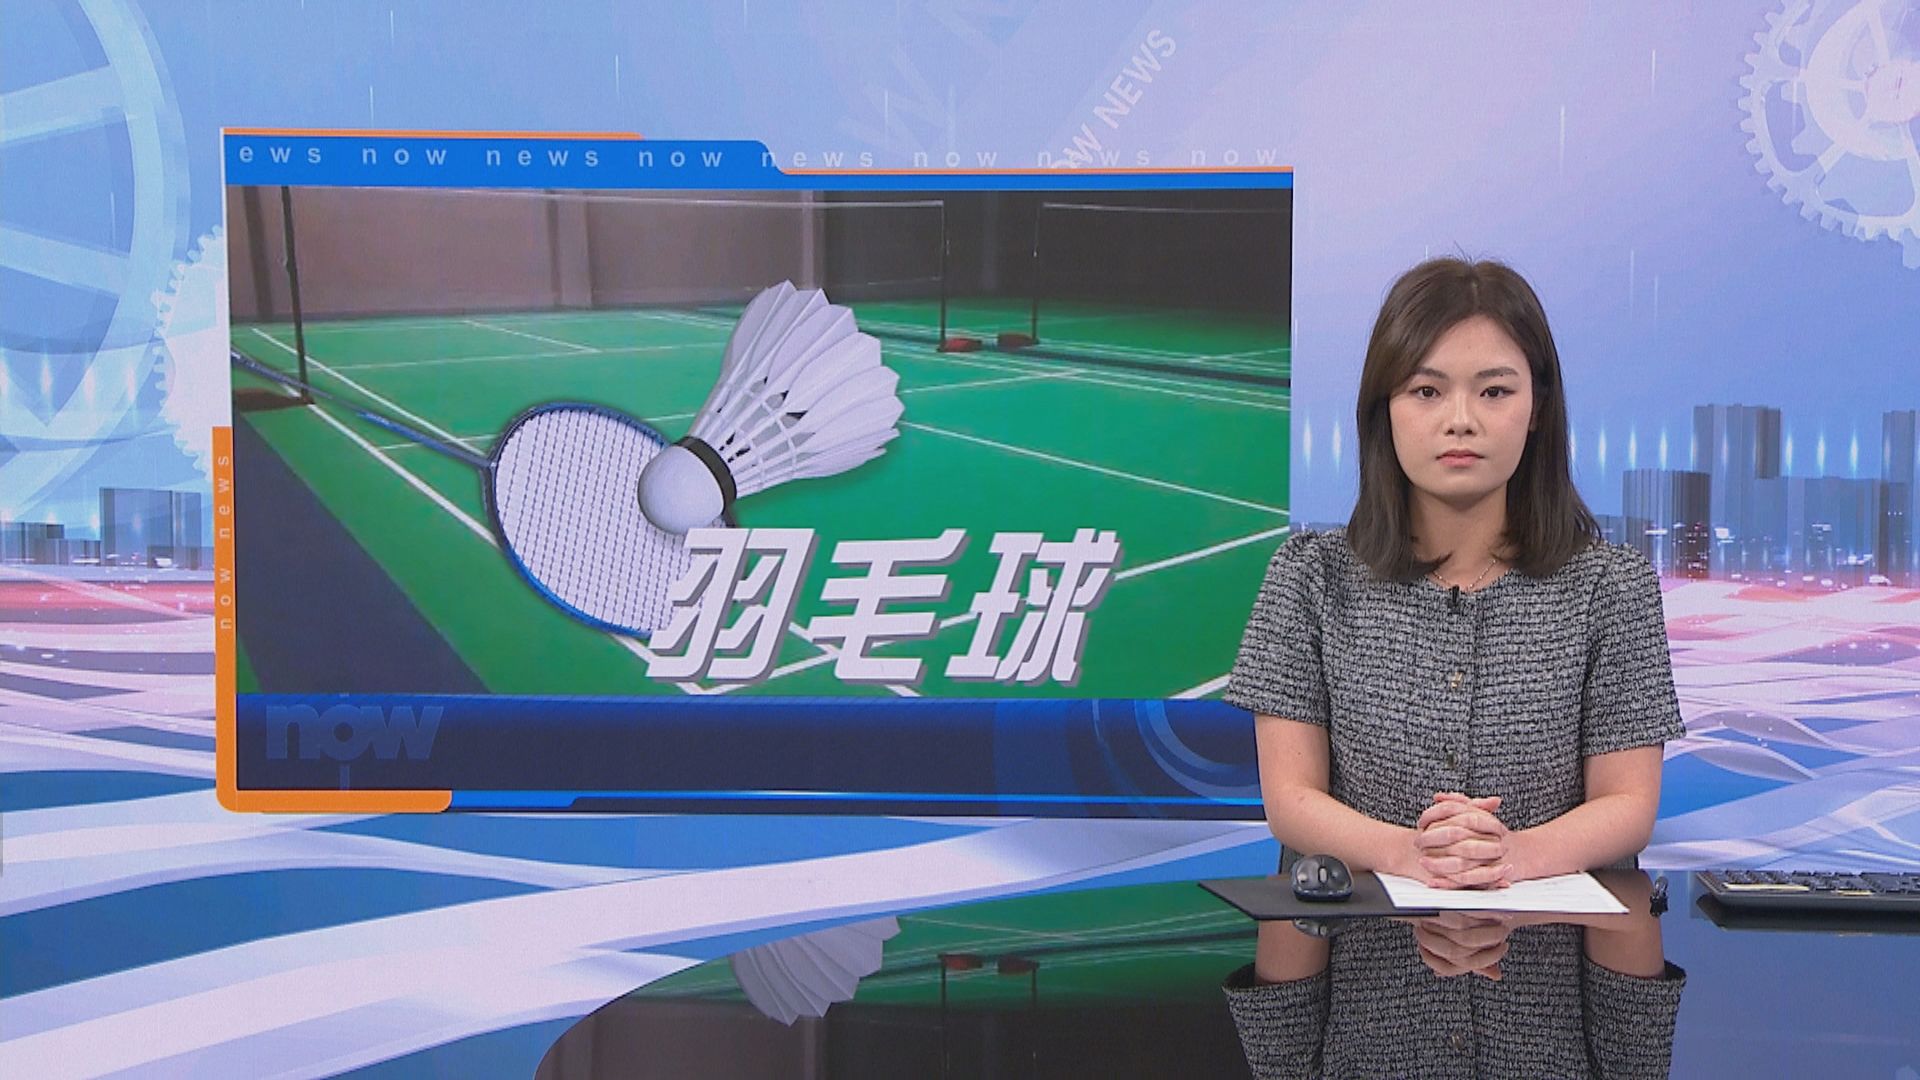 中國羽毛球大師賽 「鄧謝配」晉級混雙四強